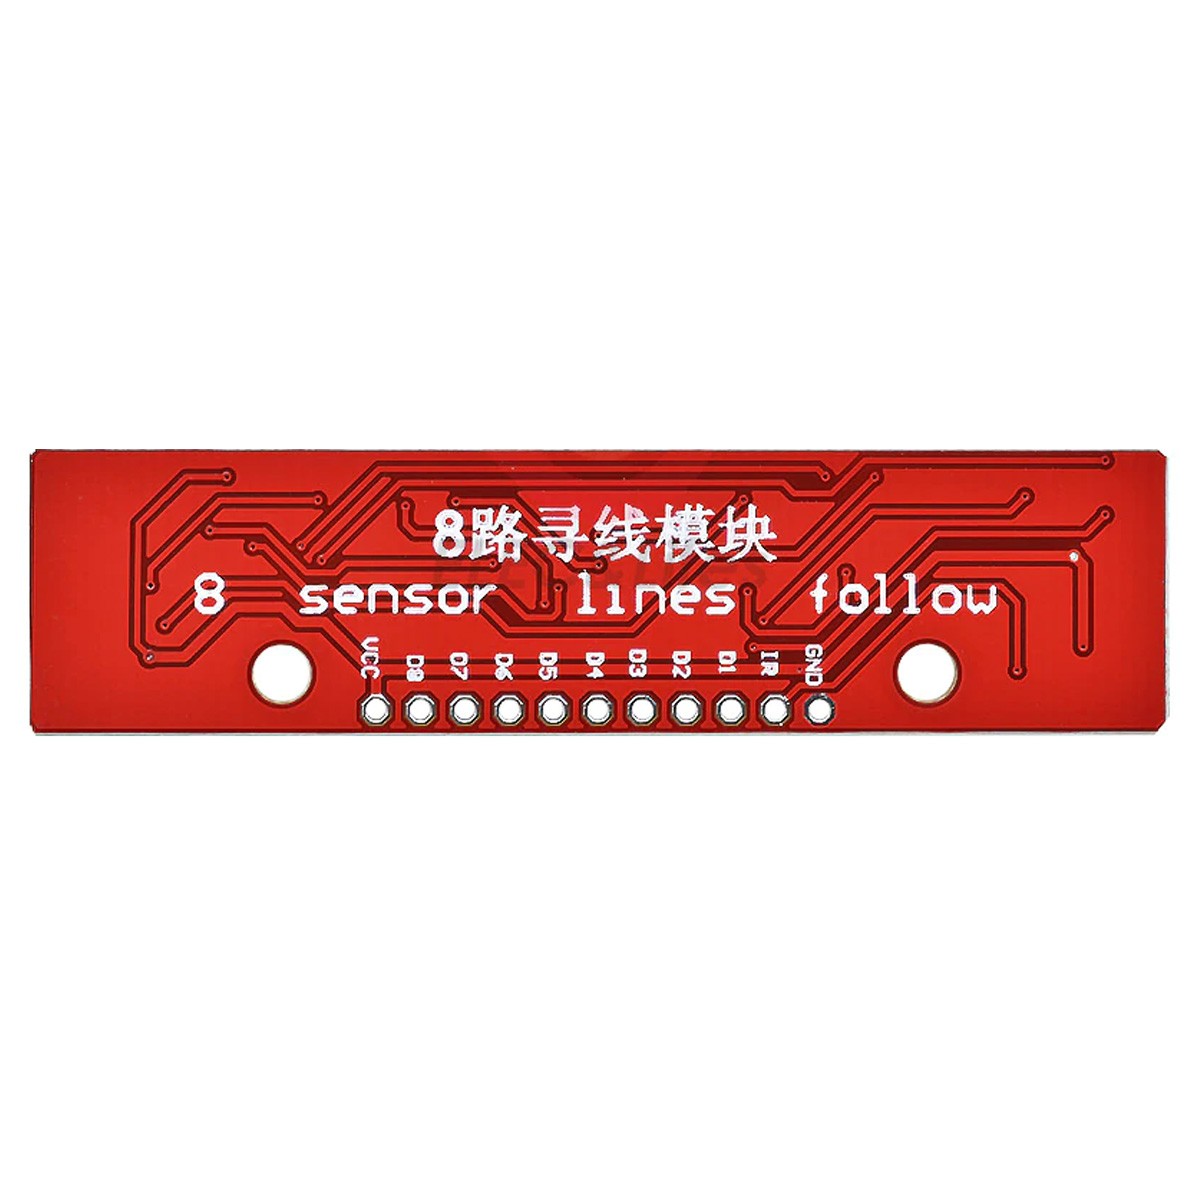 Sensor de Refletância Digital Similar ao QTR-8RC com 8 Sensores Infravermelhos de Linha